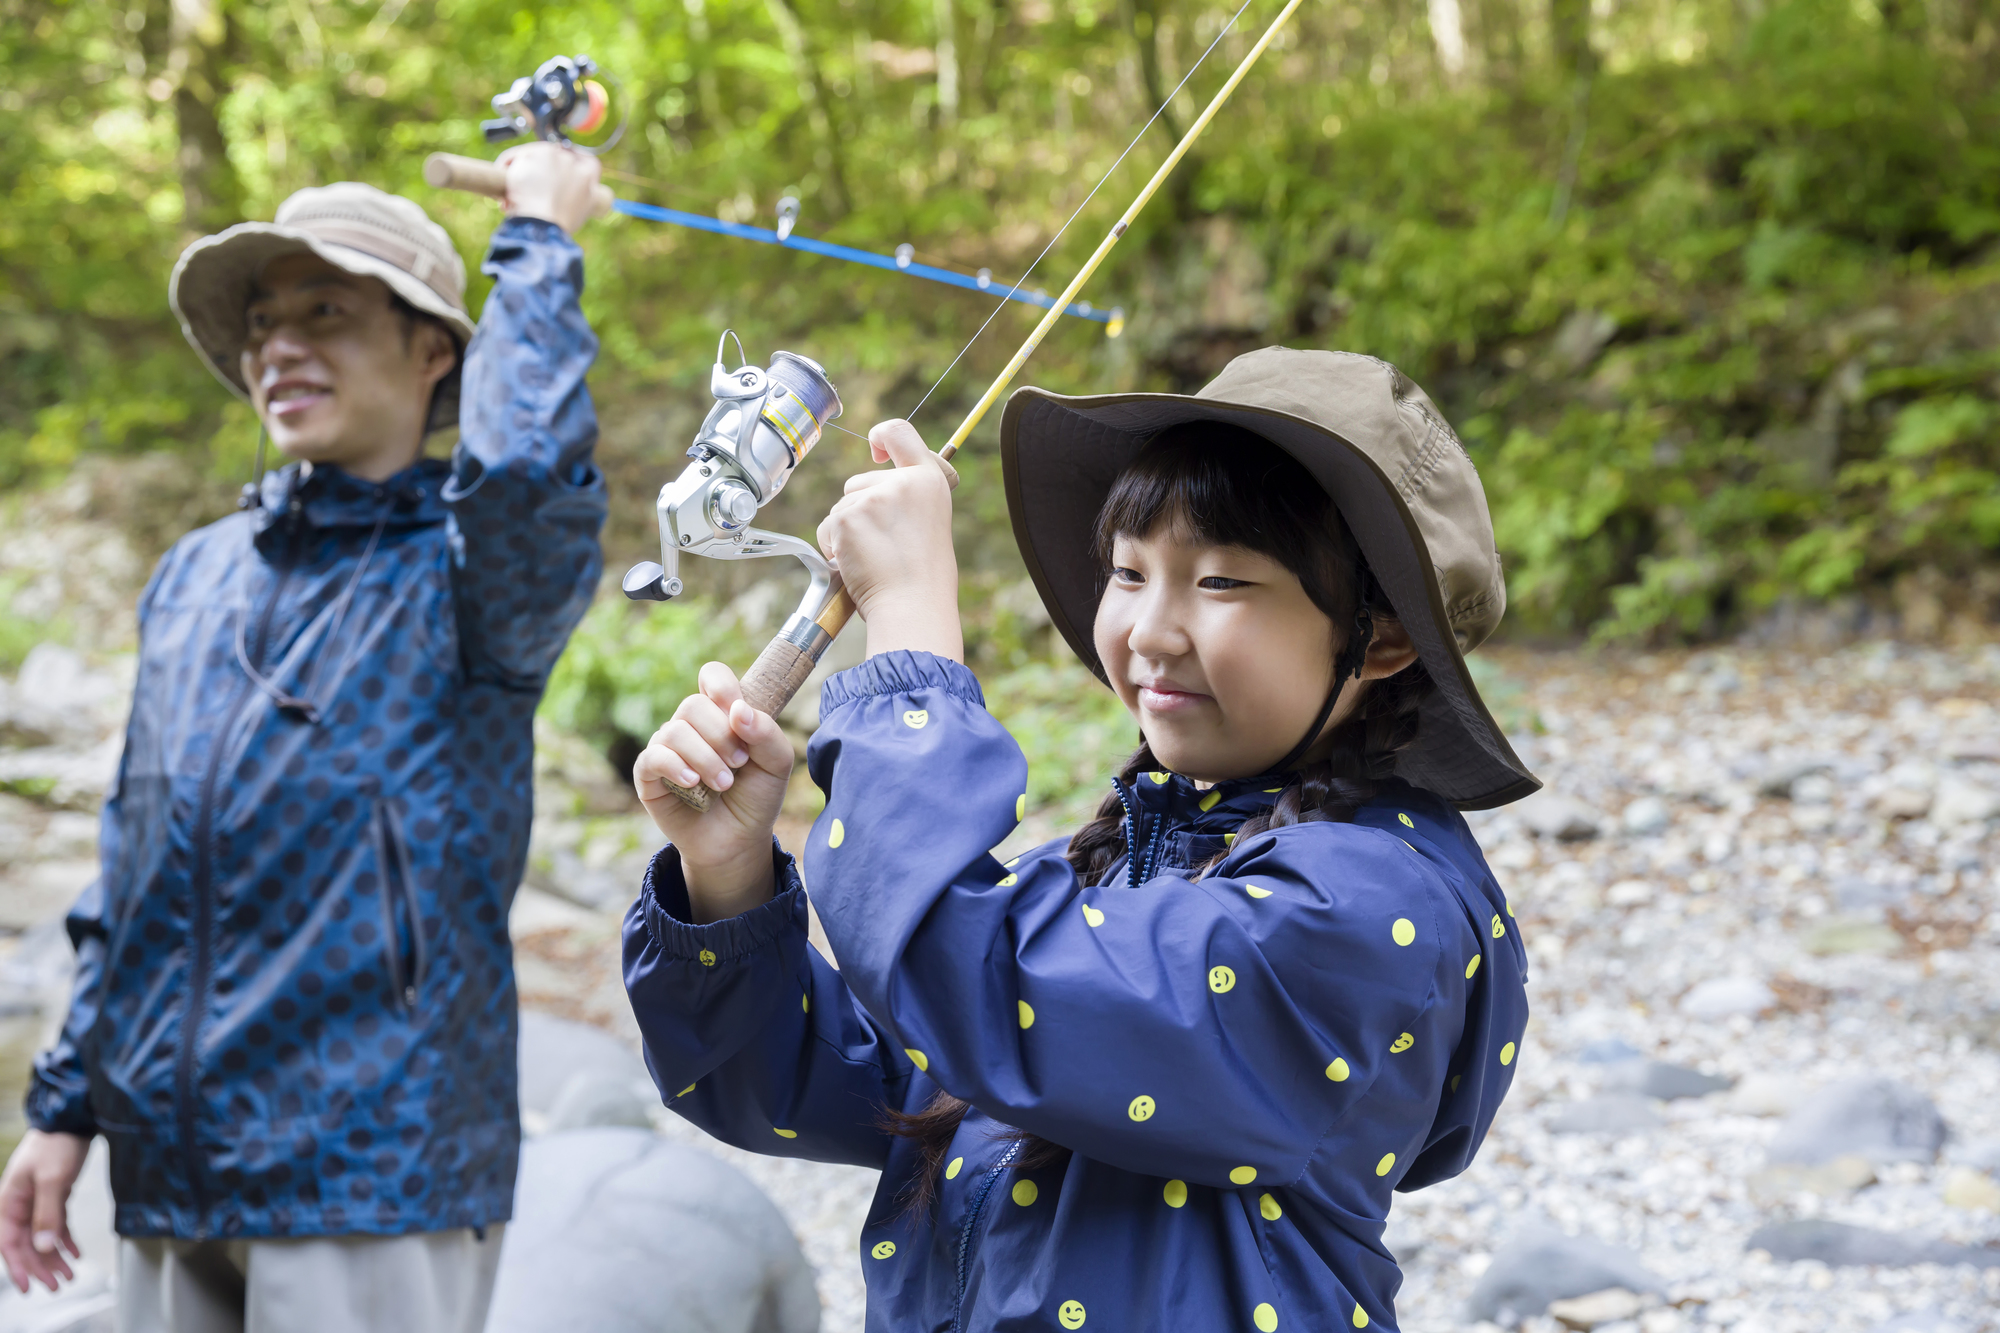 関東で川釣りするならここ 家族もおすすめな釣り場をご紹介 Aini Magazine